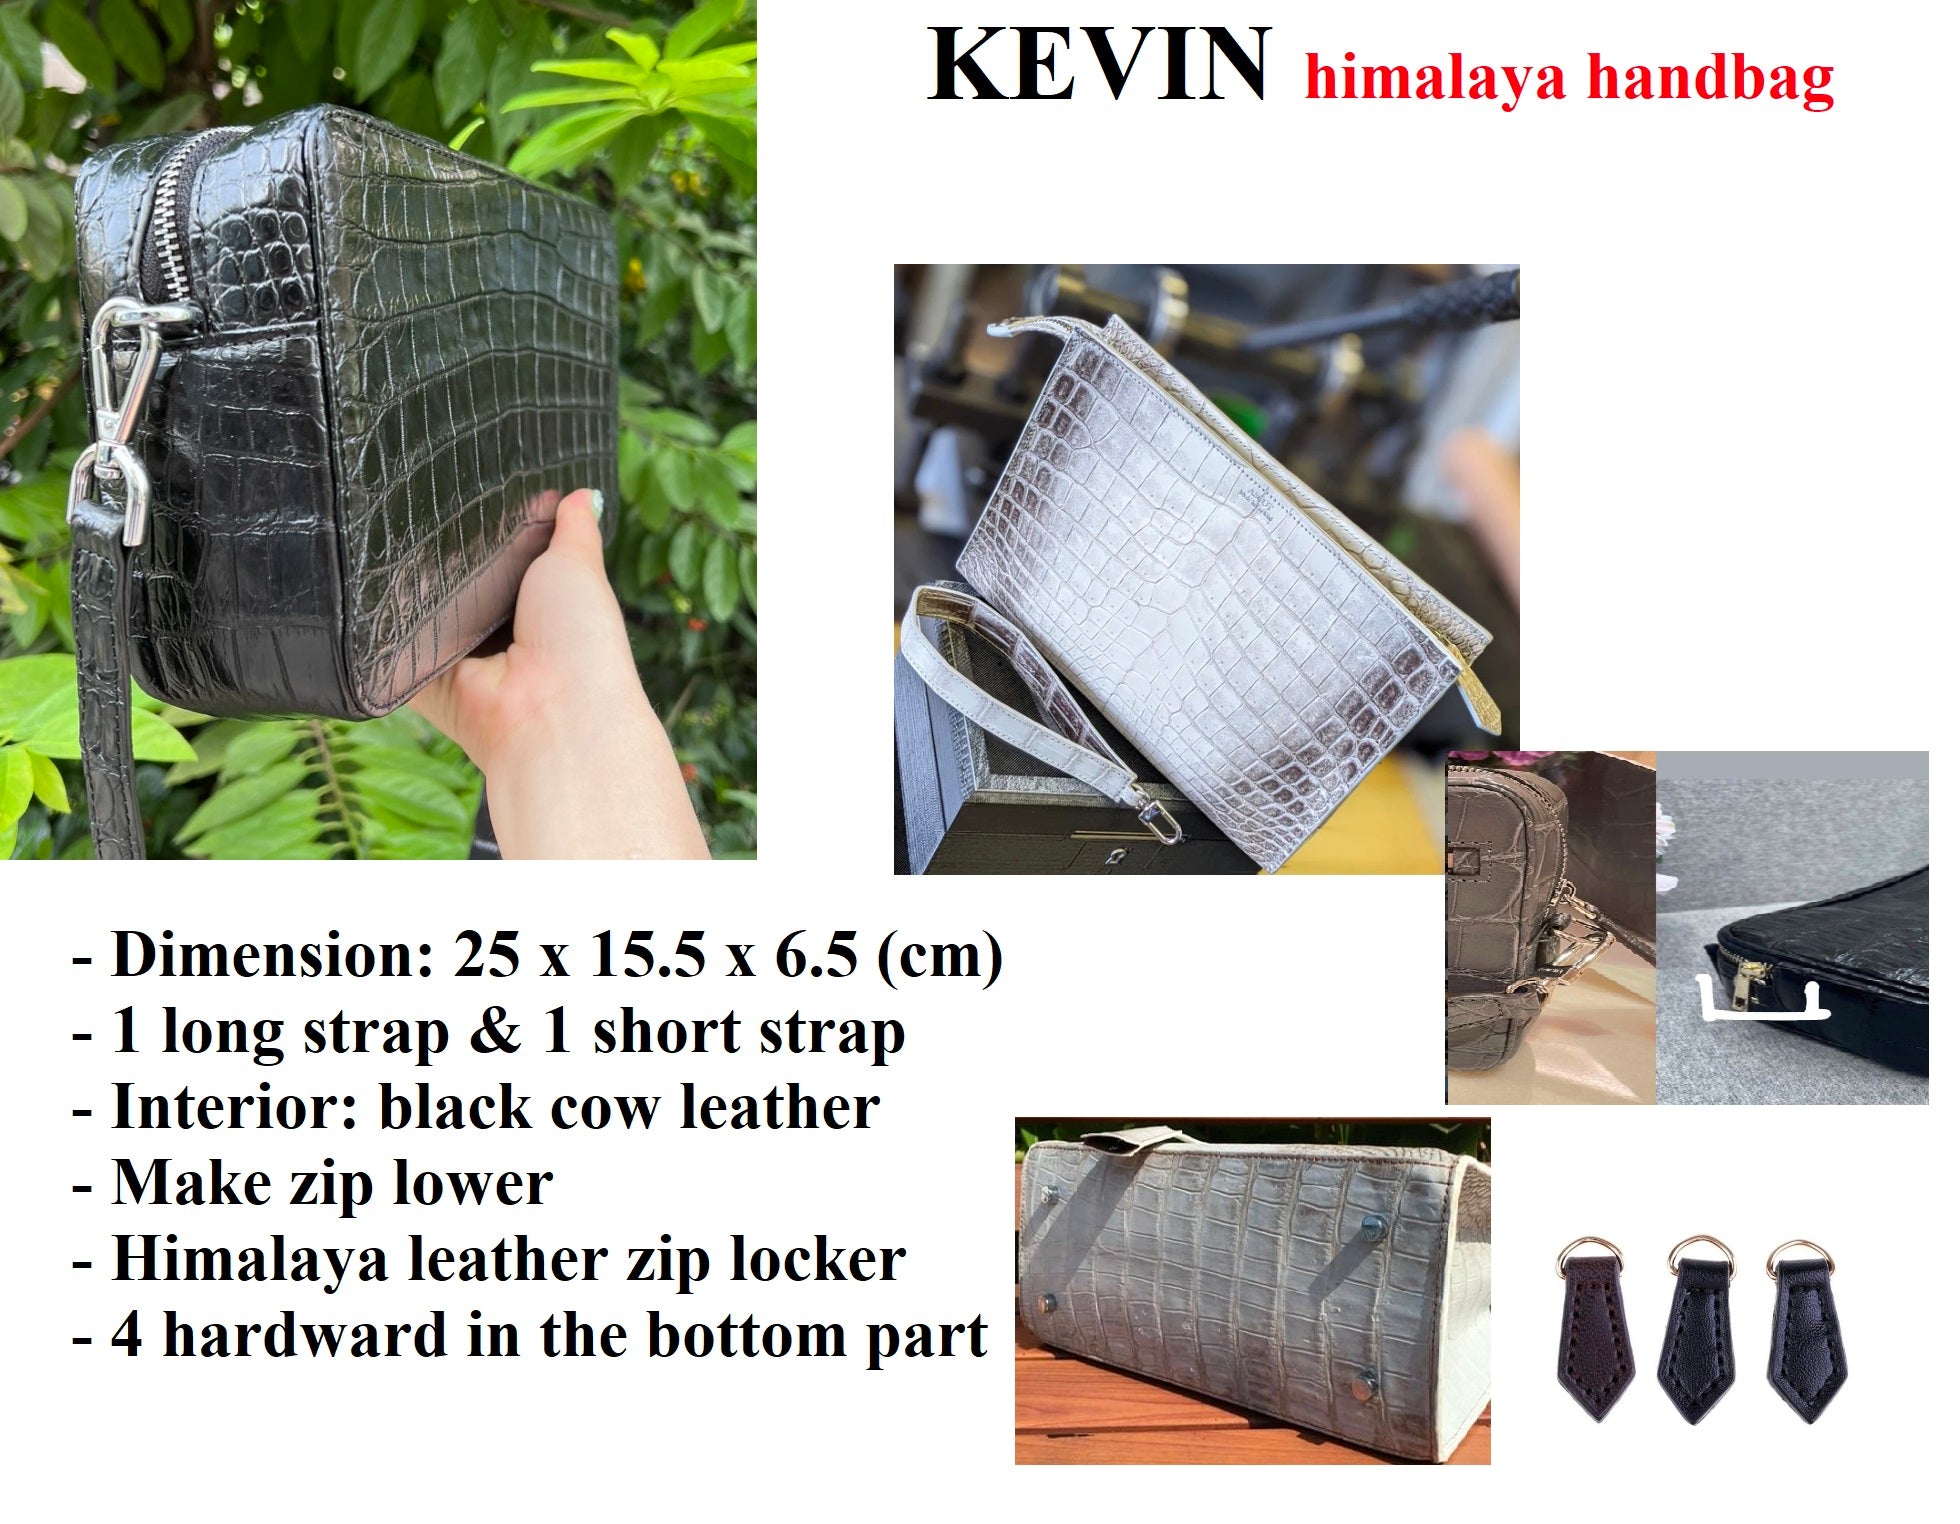 Customize Himalaya Handbag for Kevin